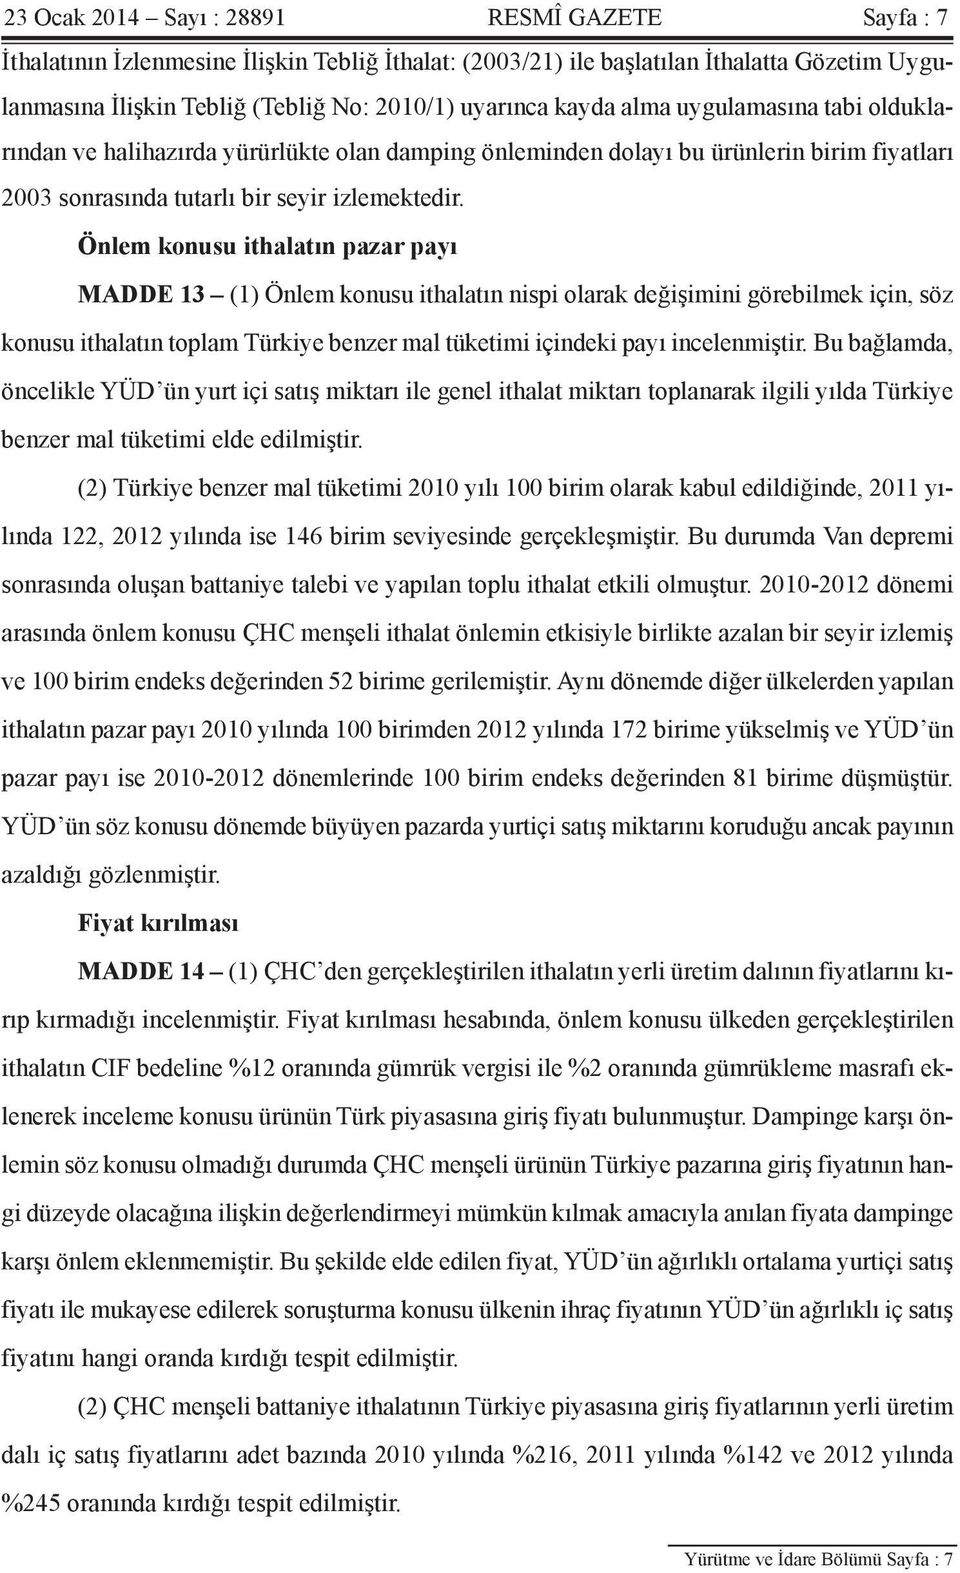 Önlem konusu ithalatın pazar payı MADDE 13 (1) Önlem konusu ithalatın nispi olarak değişimini görebilmek için, söz konusu ithalatın toplam Türkiye benzer mal tüketimi içindeki payı incelenmiştir.